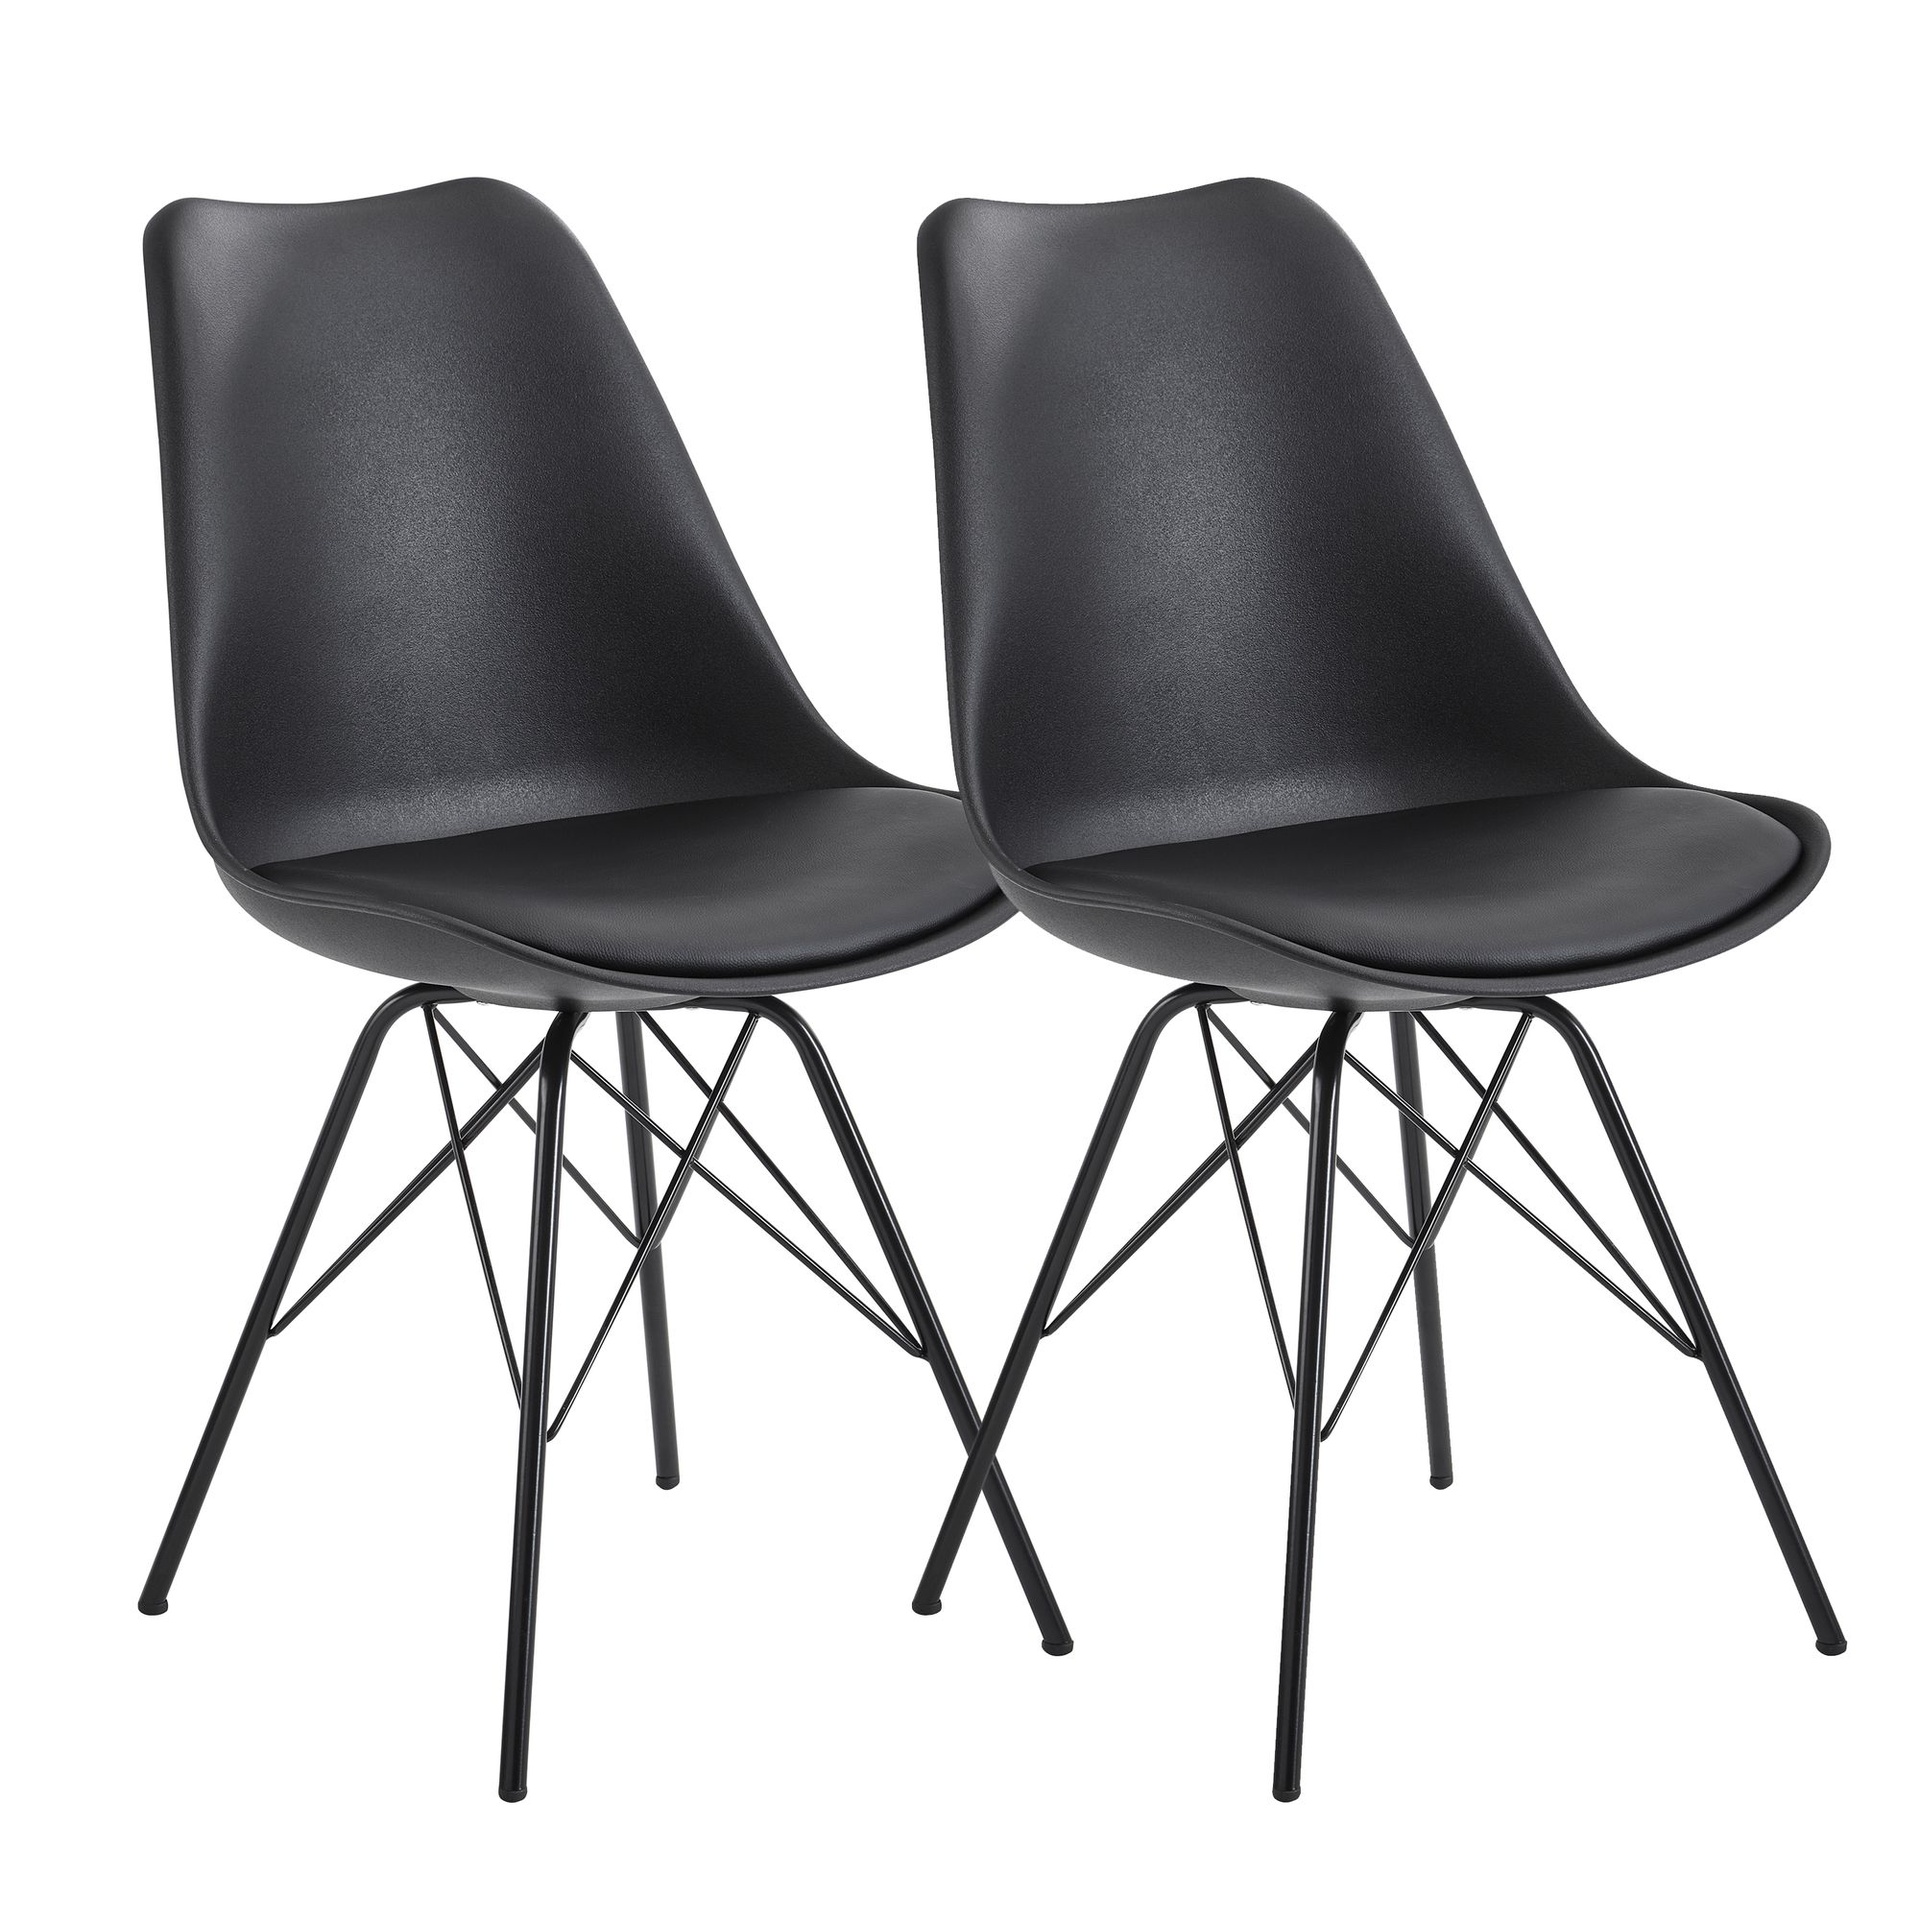 [A10043] Chaise de salle à manger lot de 2 en plastique noir design scandinave